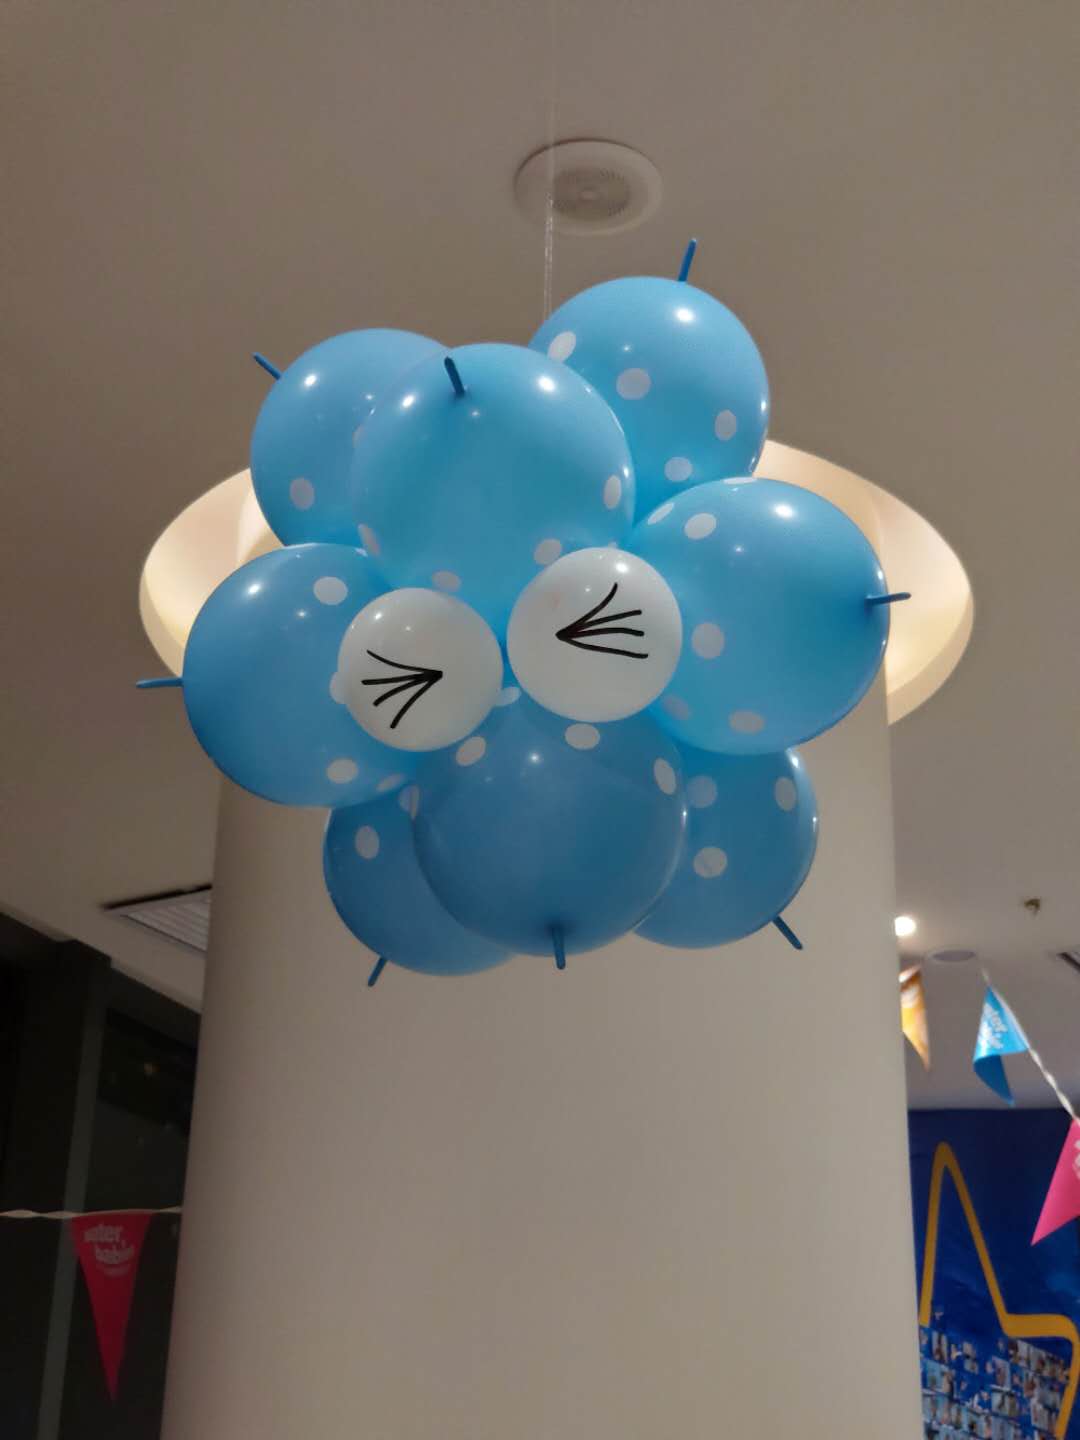 乌鲁木齐市气模拱门租赁多少钱 承诺守信 乌鲁木齐百川天和气球装饰艺术供应